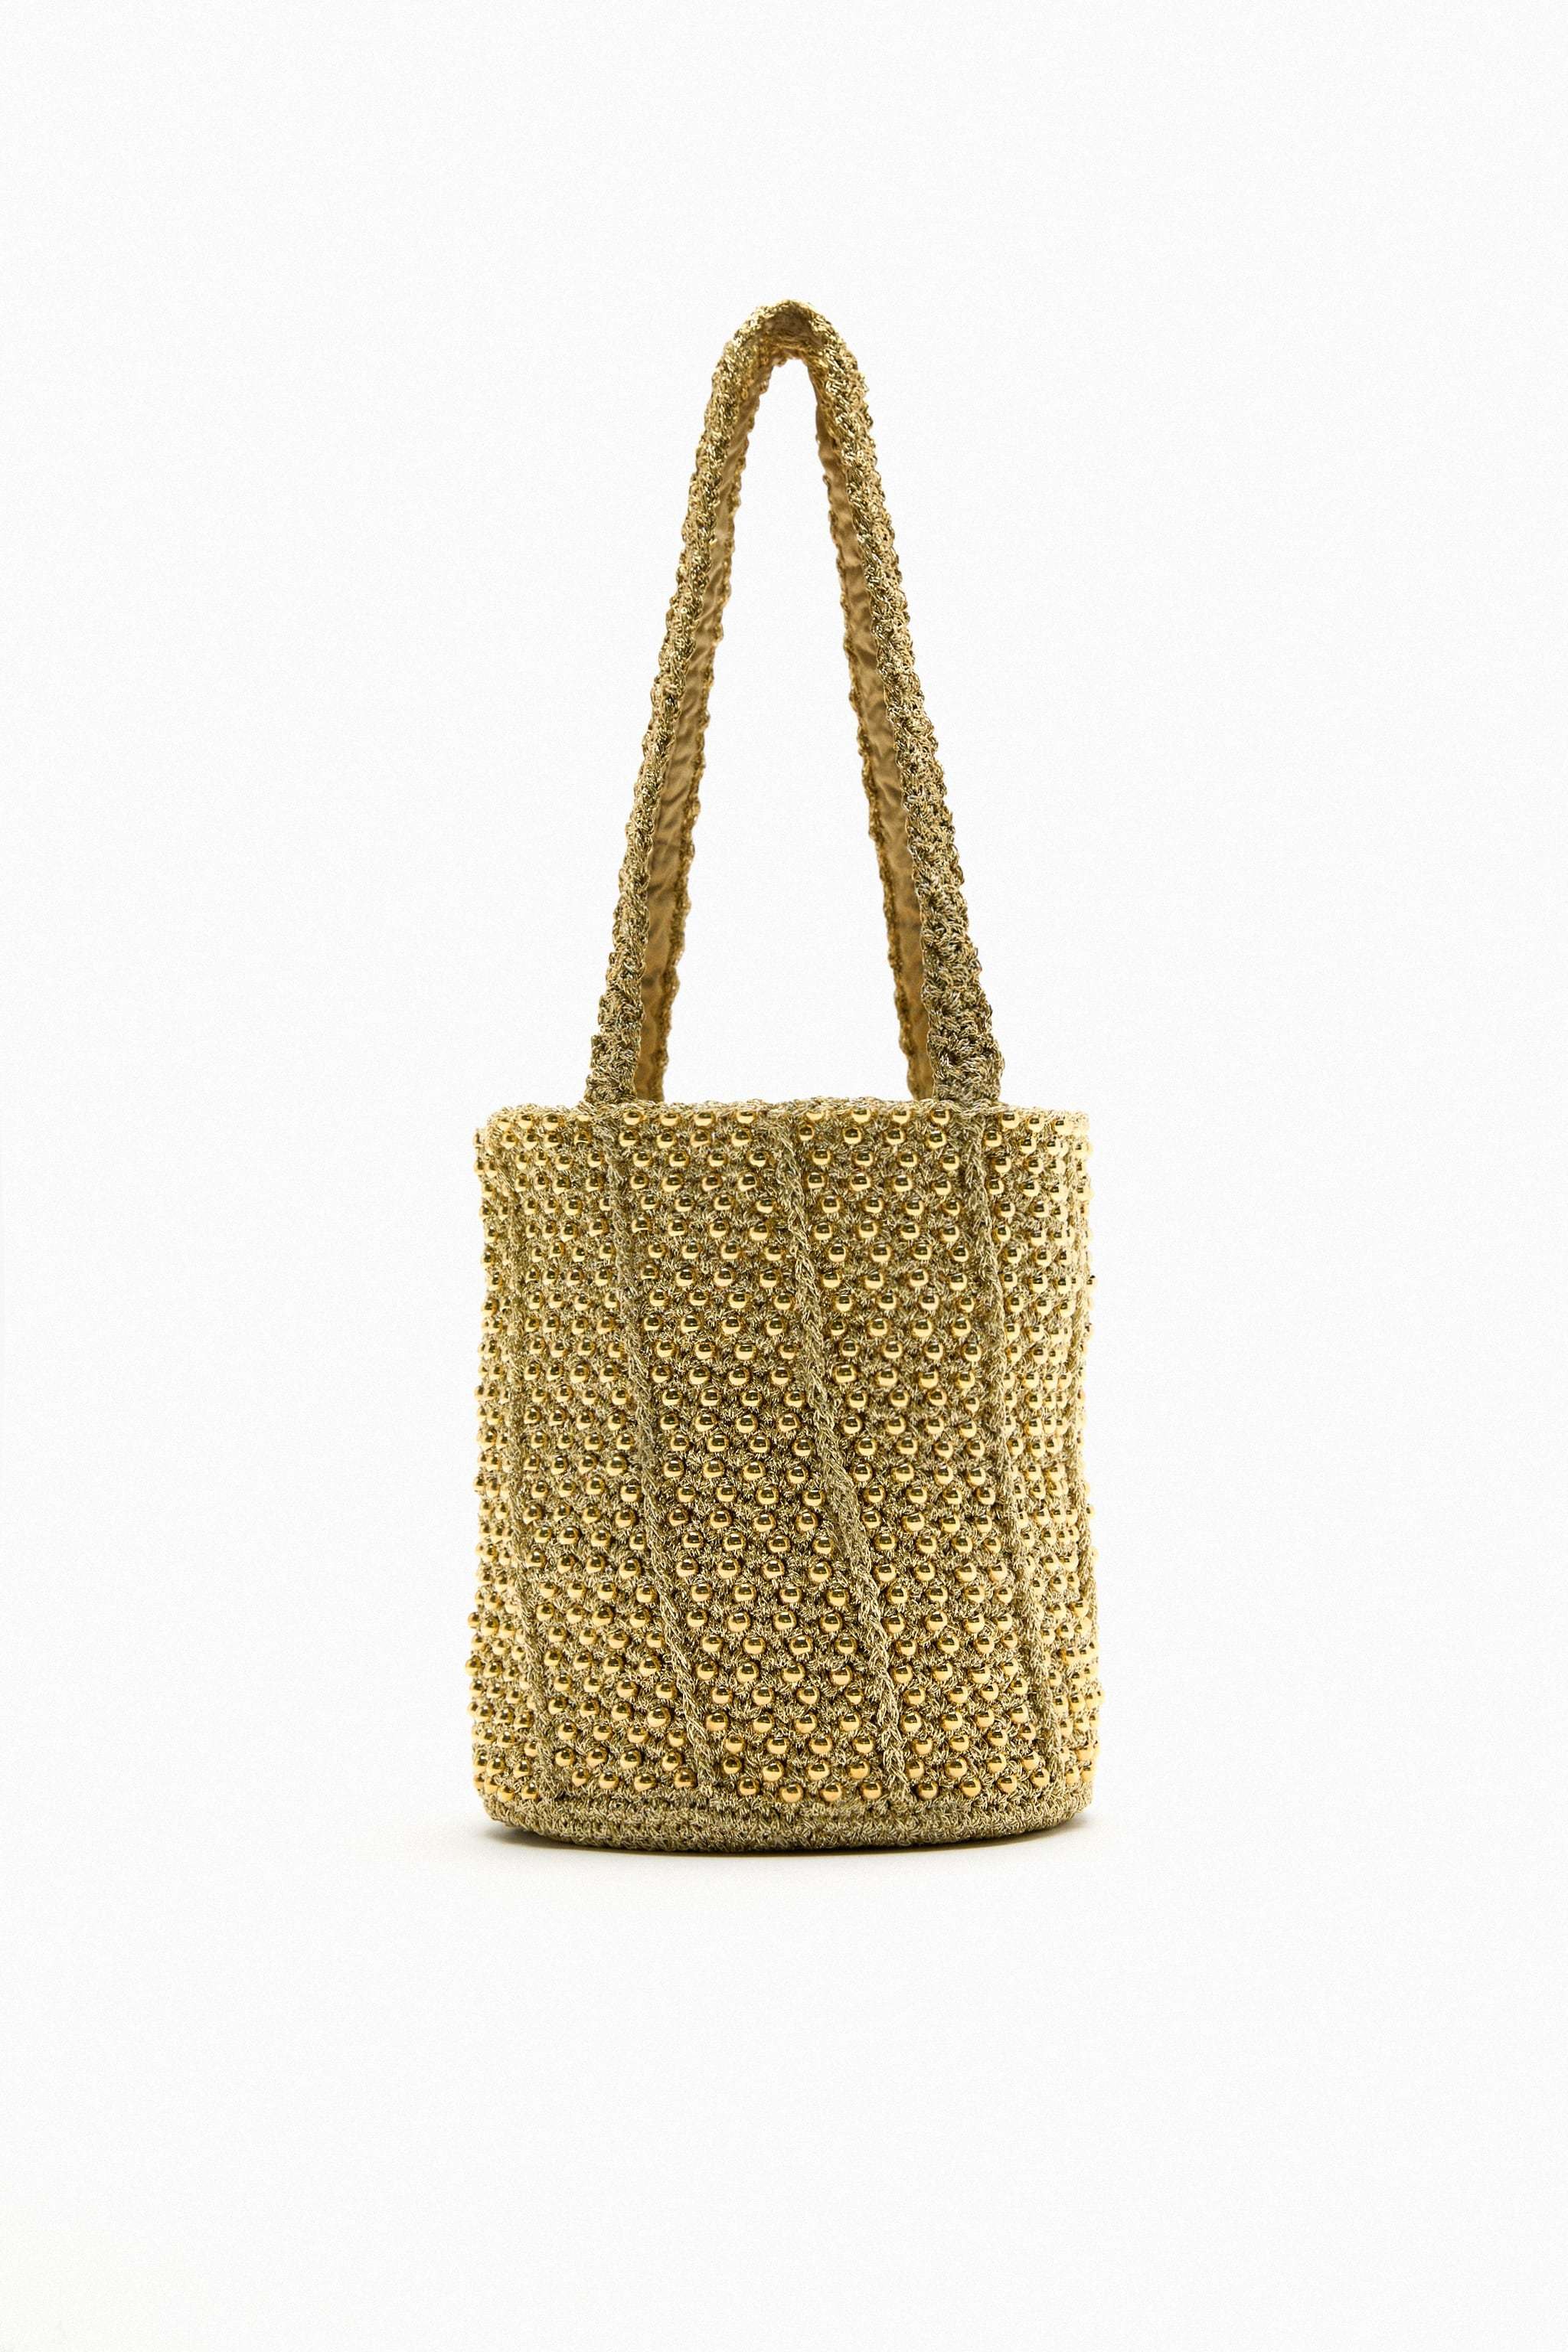 Bolso dorado de Zara (35,95 euros).